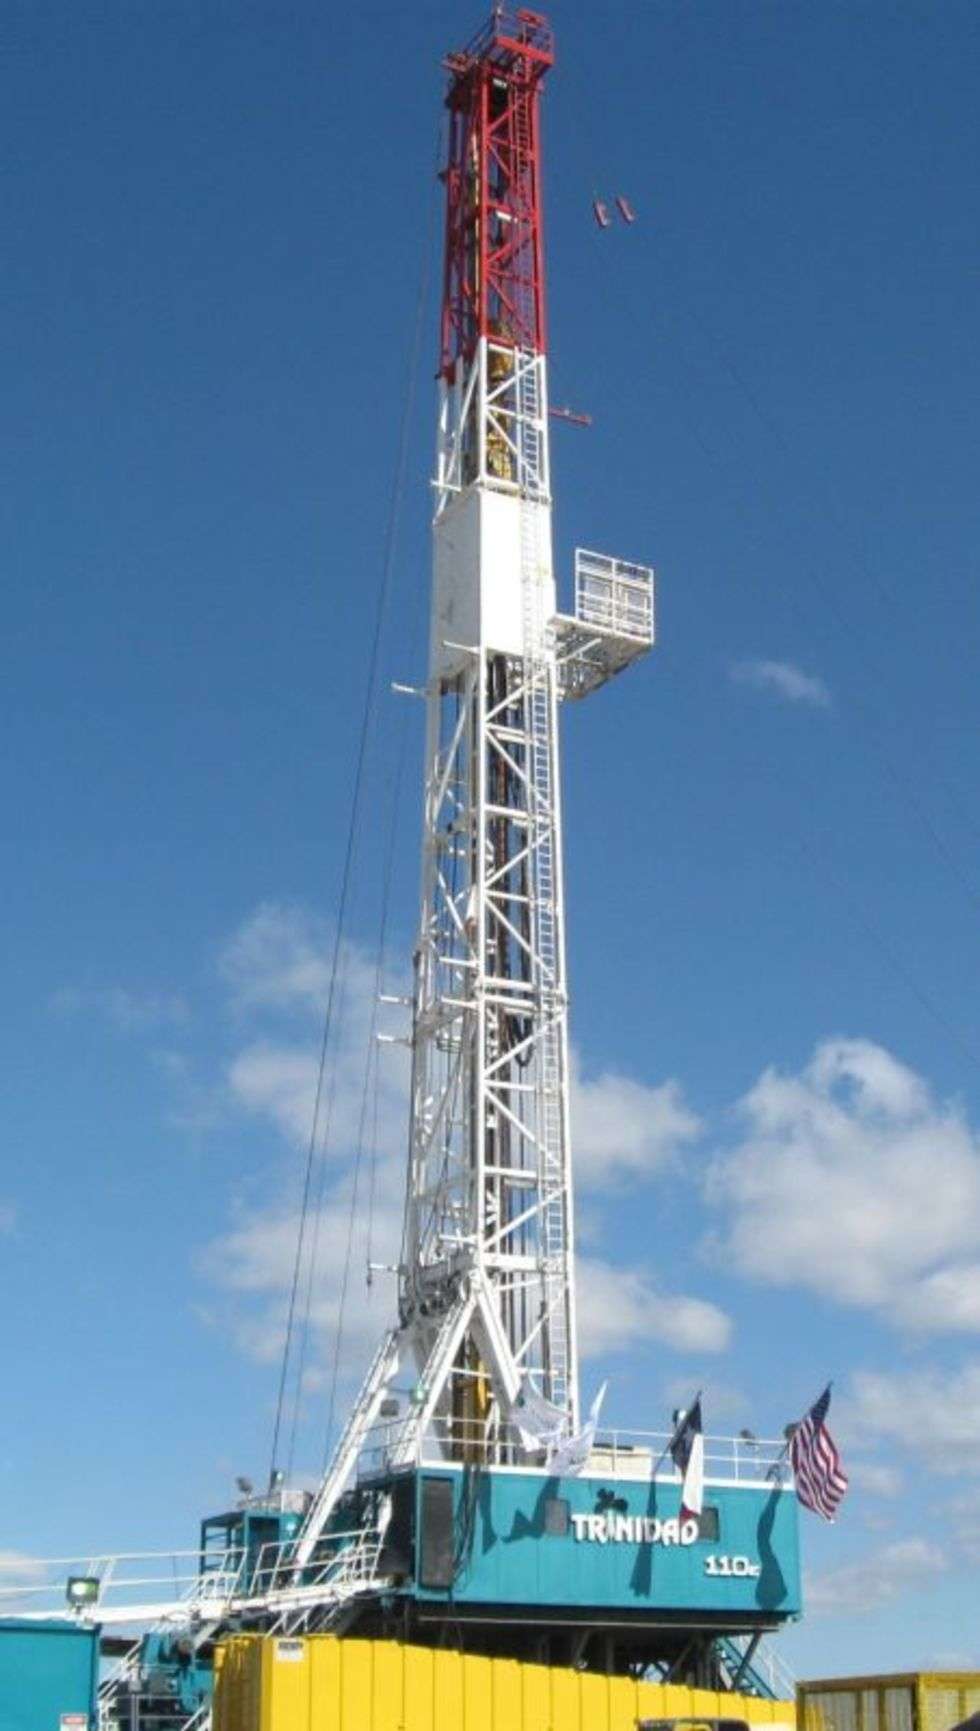  Trinidad 110E to jedna z wielu wiez wiertniczych nalezących do firmy Chesapeake Energy, amerykanskiego i światowego potentata w branzy wydobywczej gazu. Chesapeake ma w tej chwili 176 czynnych platform wiertniczych w USA. W ciągu ostatnich 4 lat firma odkryla 5 najlepszych zlóz lupkowych w Ameryce, glównie w stanie Teksas. – Wlasne zasoby gazu sprawiają, 
ze jesteśmy mniej wrazliwi na zawirowania w światowej gospodarce i polityce – wyjaśnia Julie H. Wilson z Chesapeake Energy. – Chcemy miec czyste powietrze i niezaleznośc energetyczną? Rozwiązanie jest tuz pod naszymi stopami.